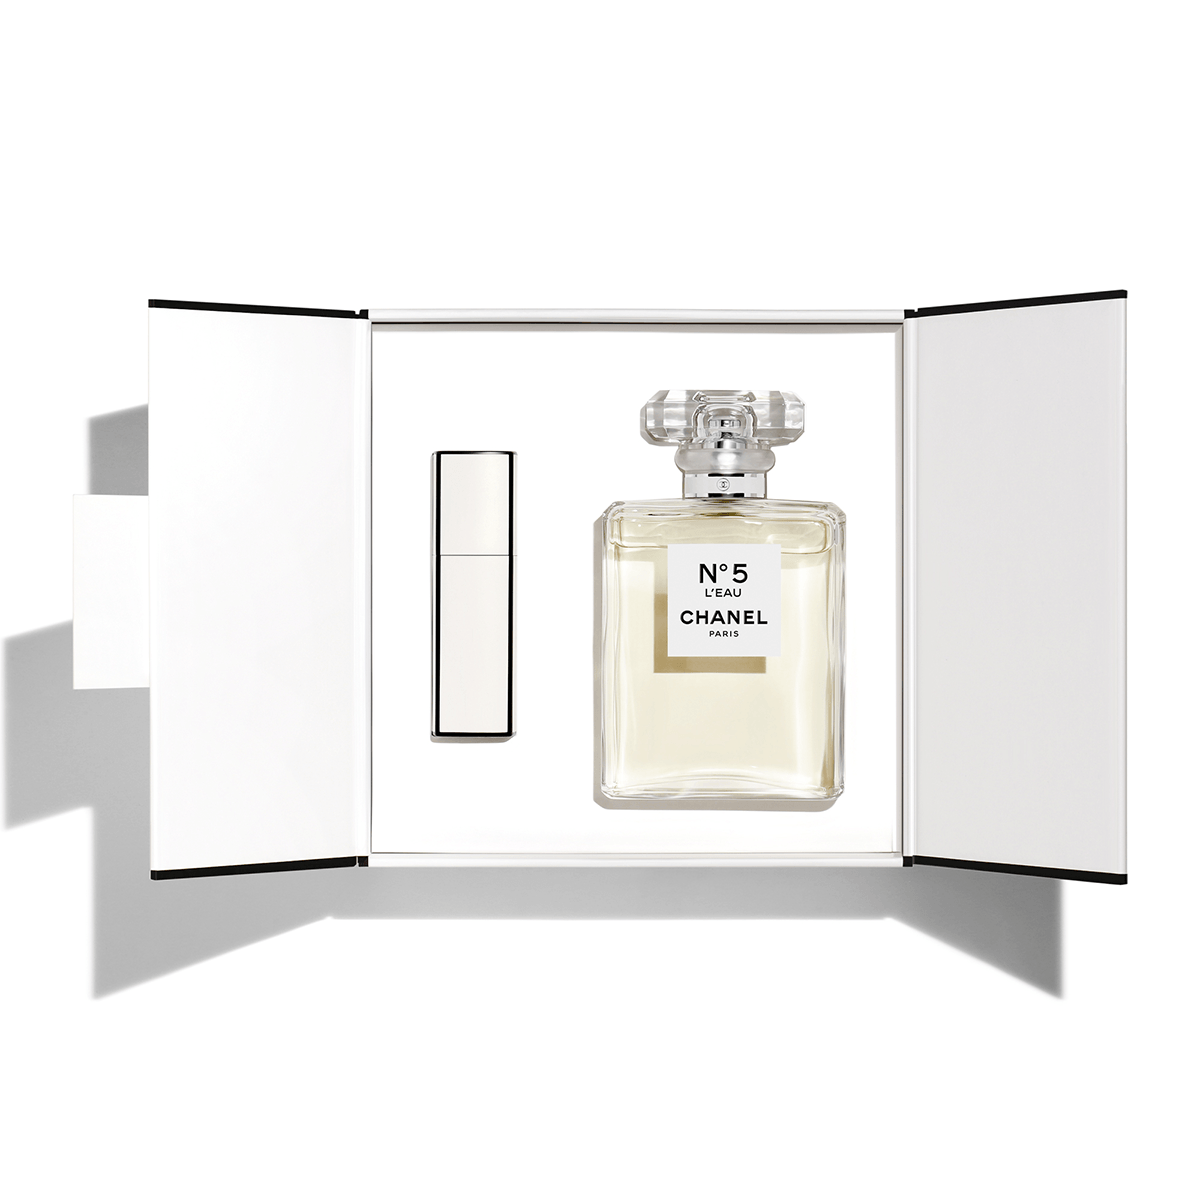 Chanel N°5 L'Eau EDT Exclusive Gift Set - My Perfume Shop Australia